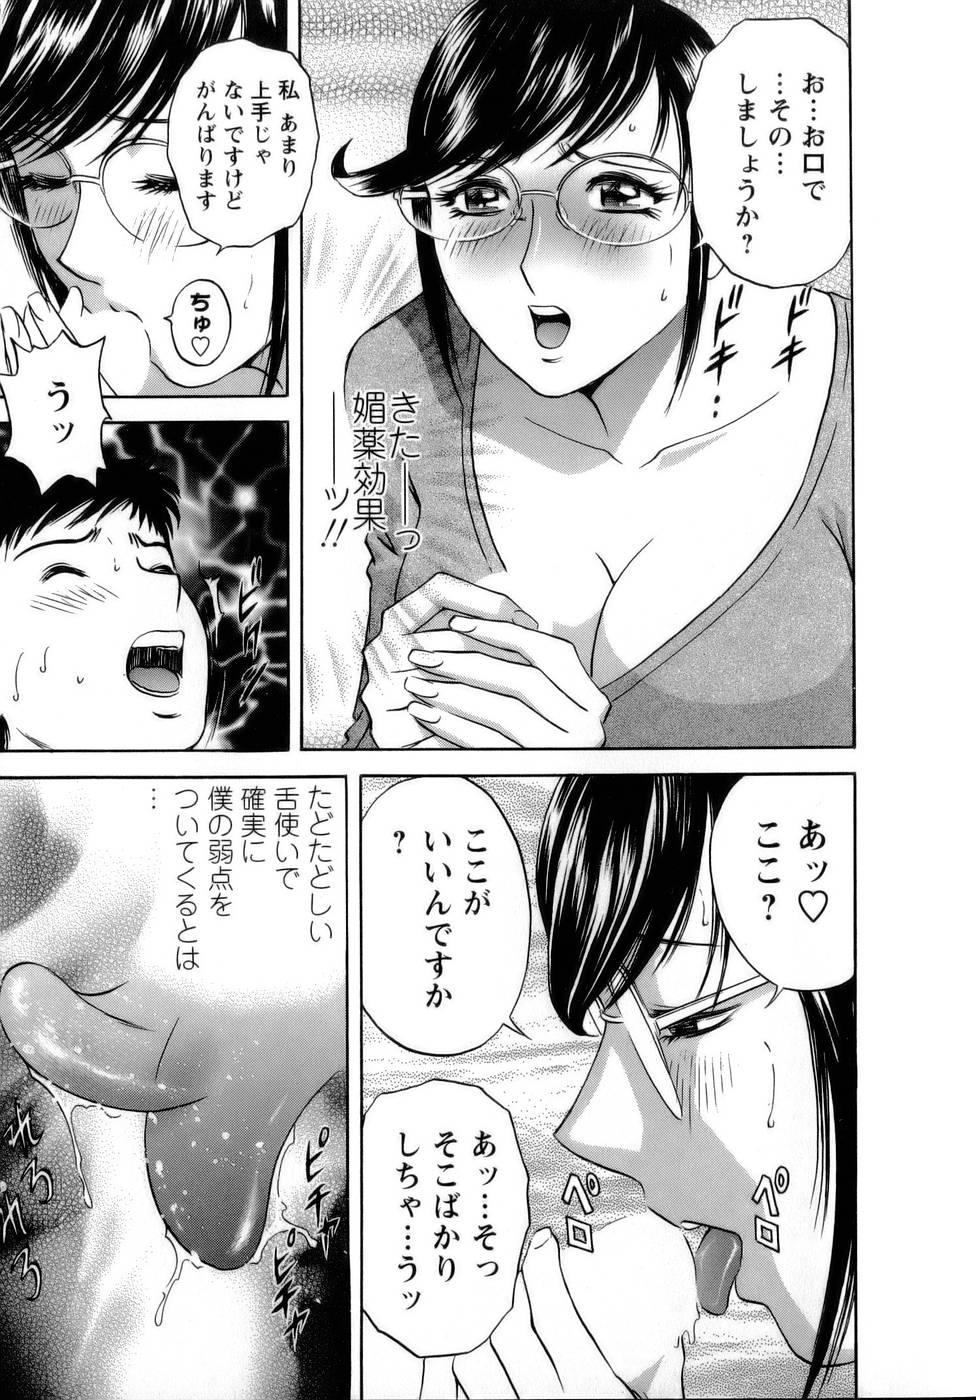 [Hidemaru] Mo-Retsu! Boin Sensei (Boing Boing Teacher) Vol.1 122